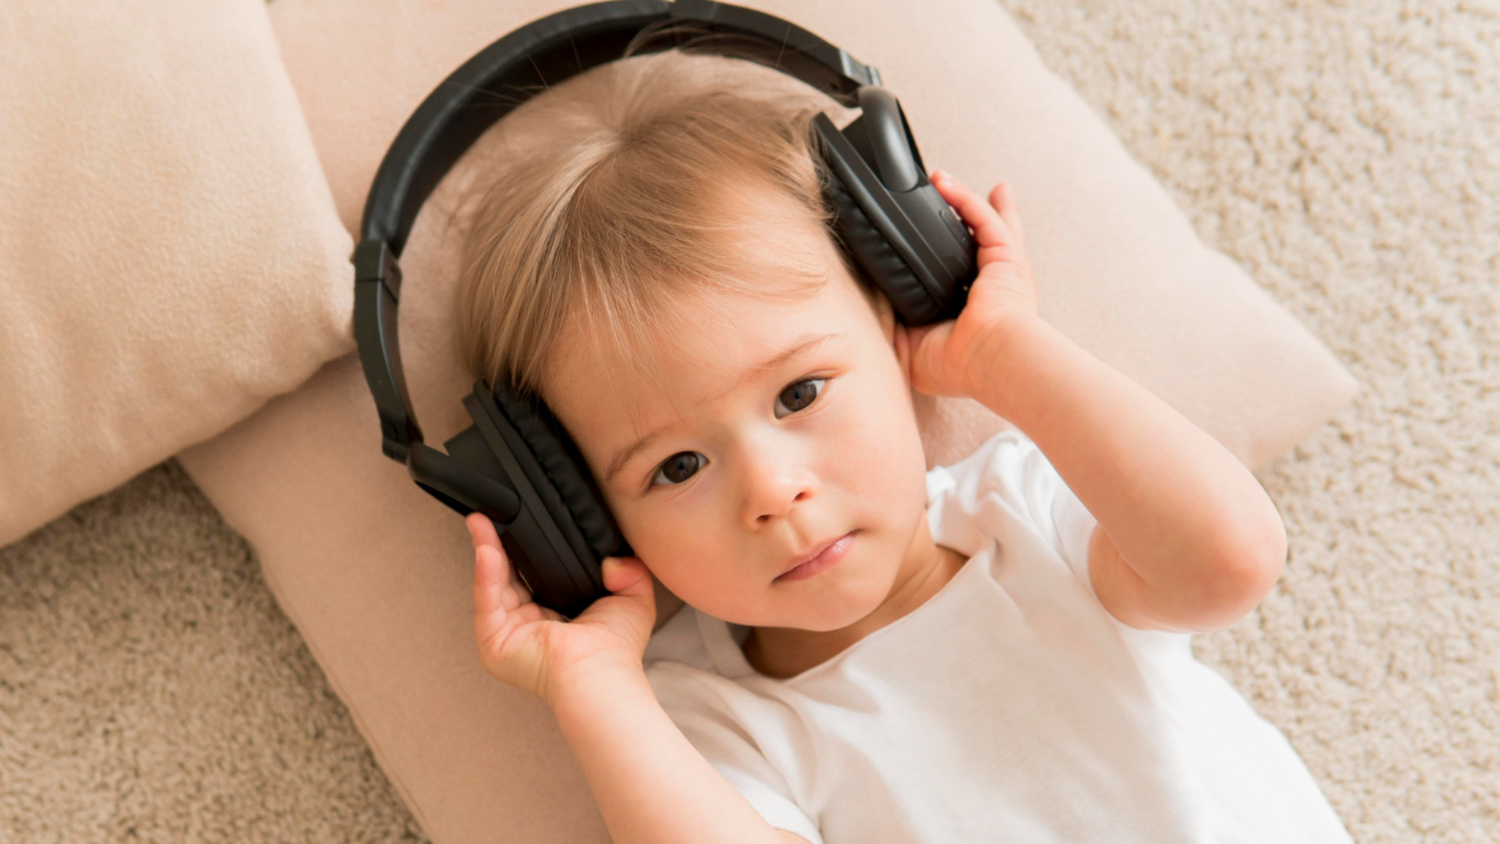 Música ajuda no desenvolvimento infantil? Mitos e verdades